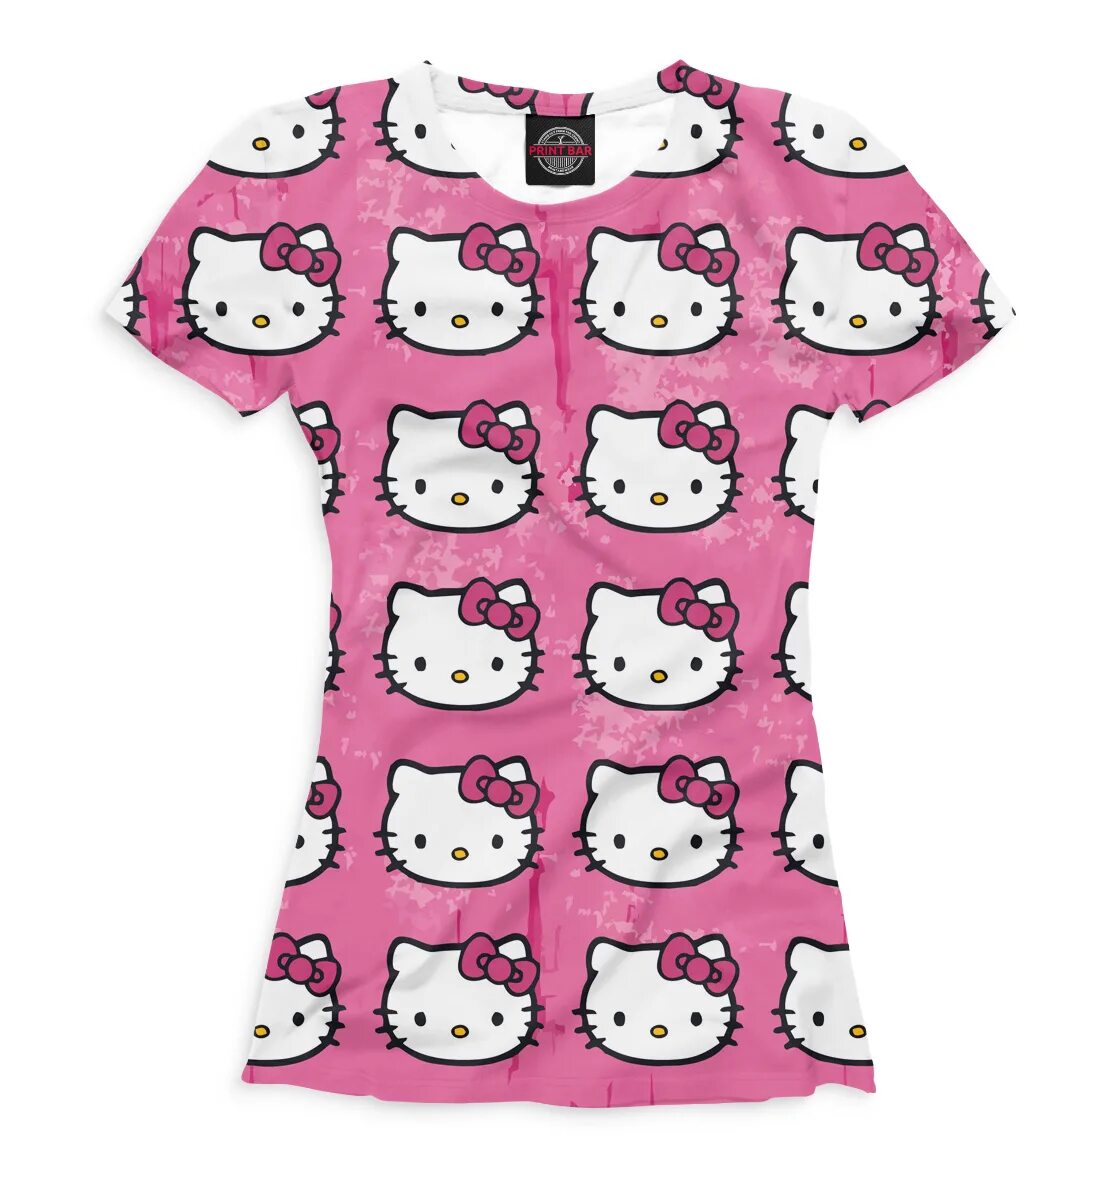 Хэллоу одежда. T-Shirt Хеллоу Китти. Футболка Хелло Китти детская. Детское платье Хелло Китти. Hello Kitty одежда.